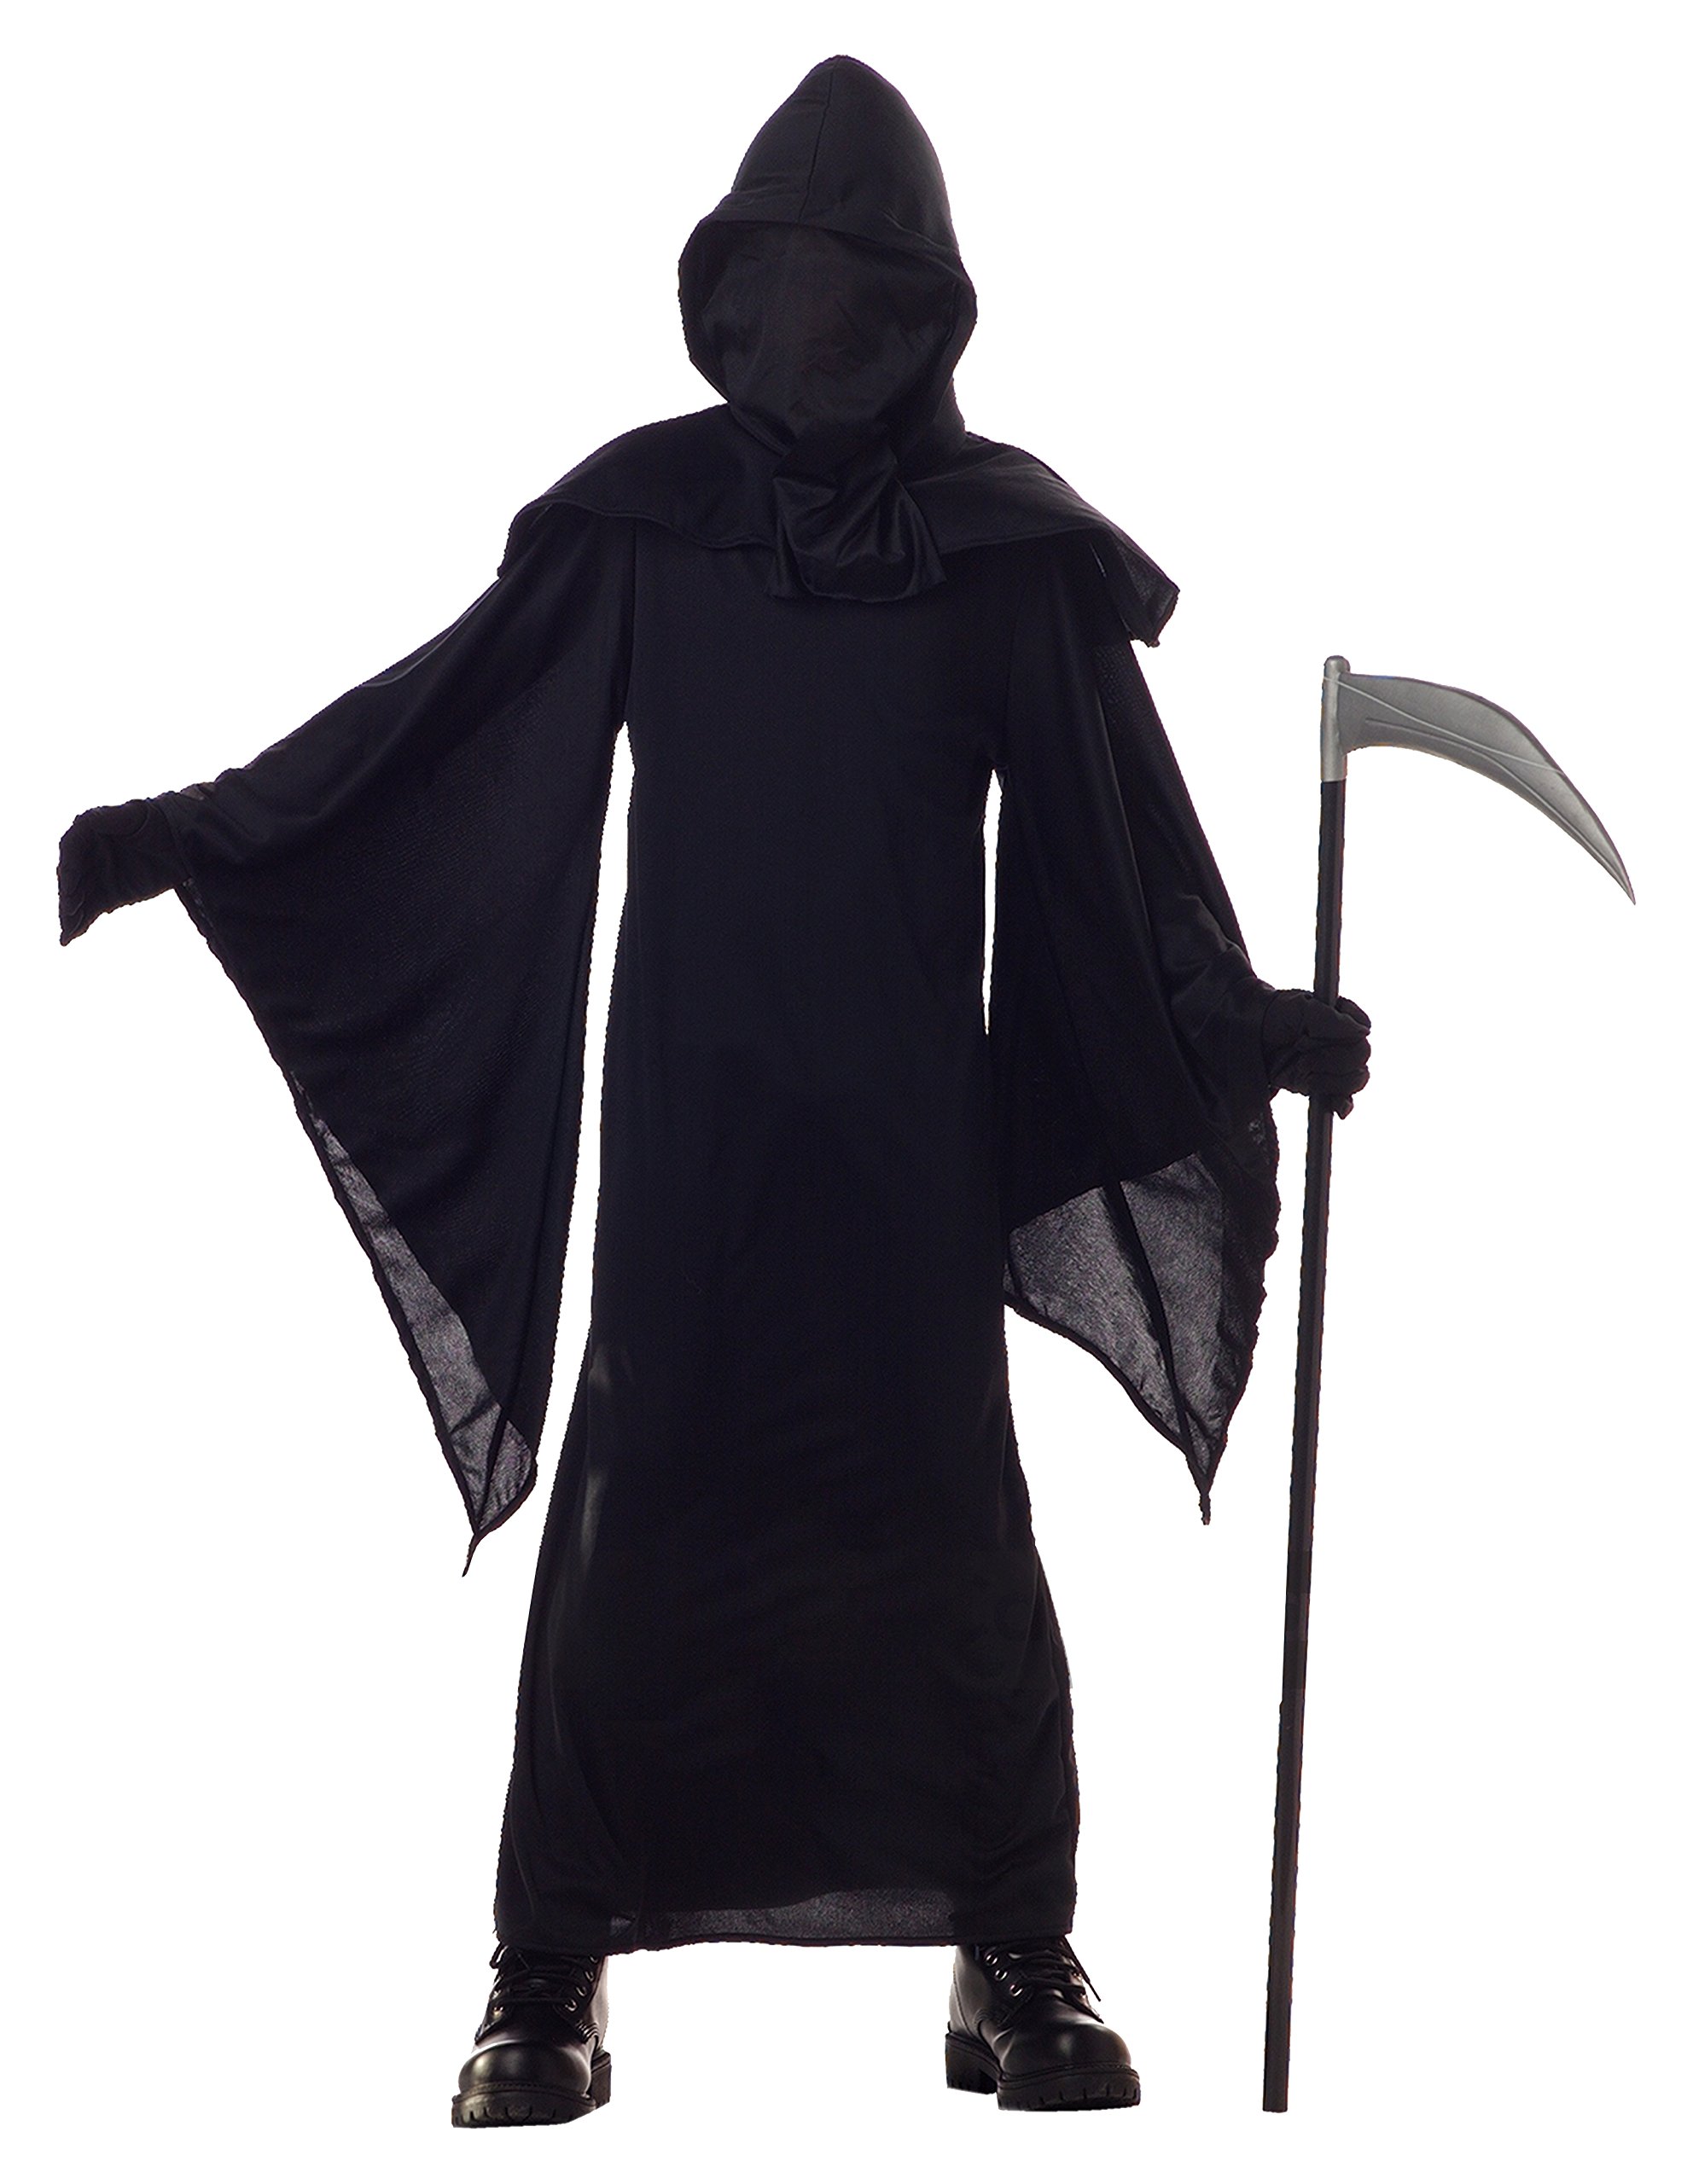 California Costumes Horror Robe Child Costume, Medium , Black